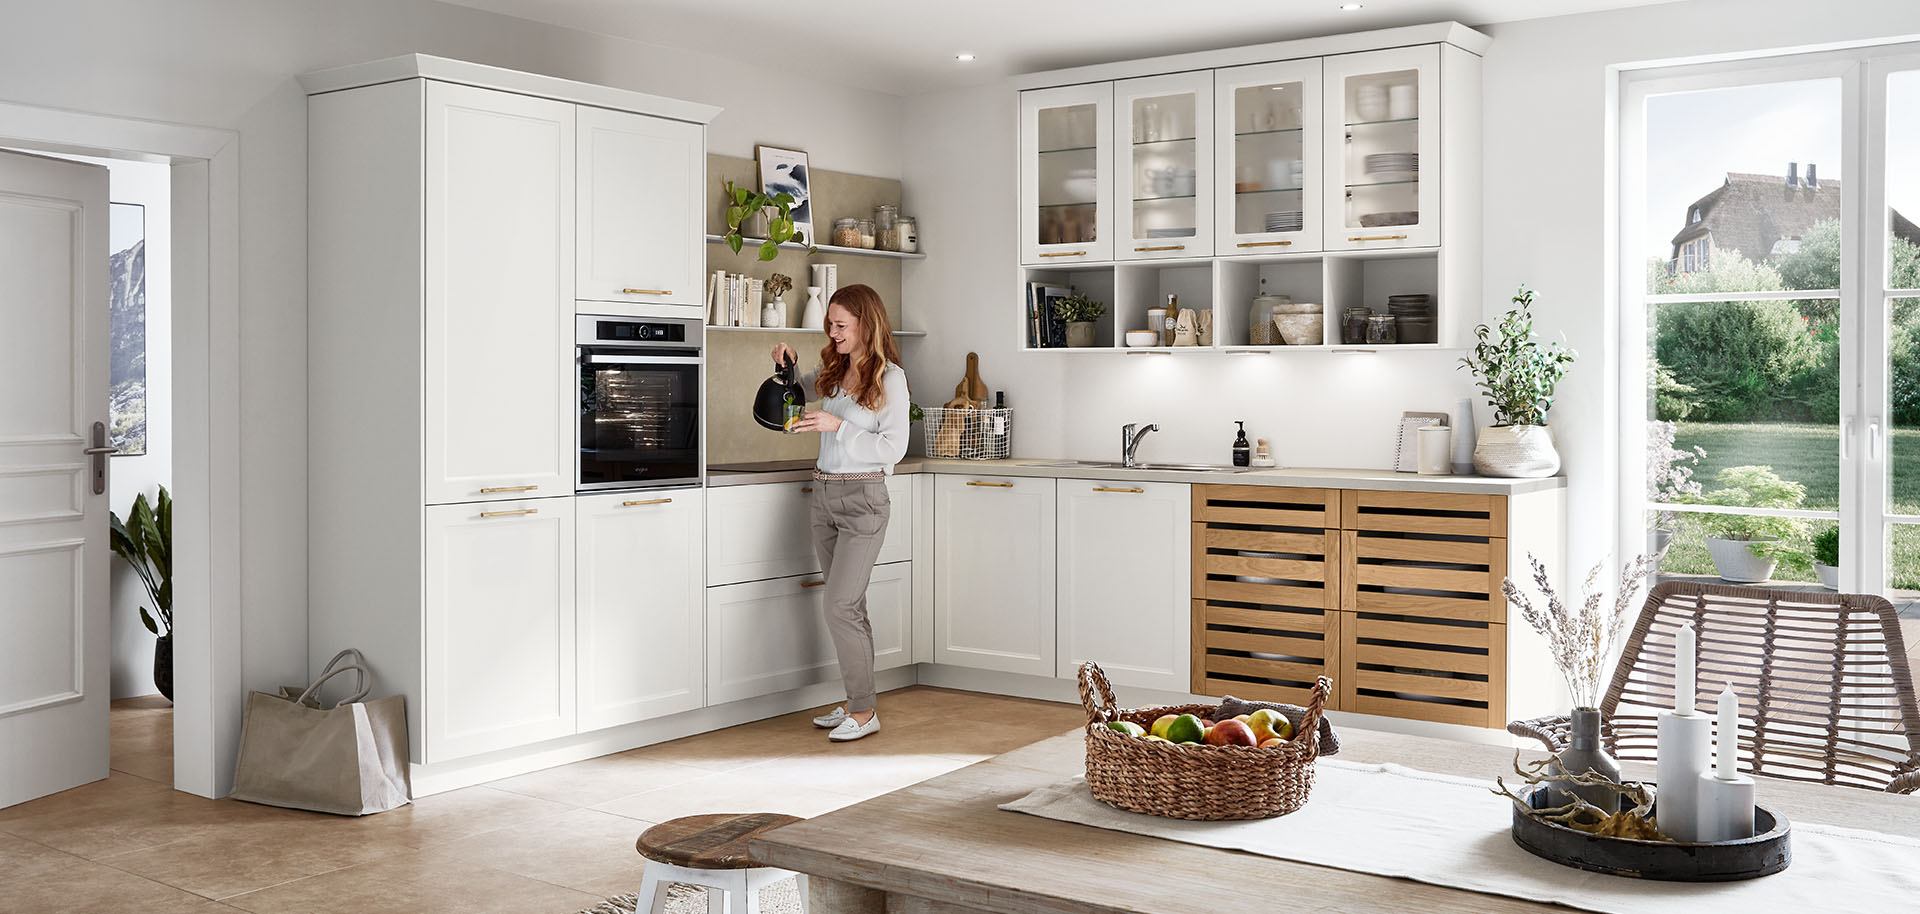 Una cocina brillante y moderna con gabinetes blancos y acentos de madera. Una persona está de pie, interactuando con un dispositivo inteligente, en medio del espacio lleno de luz solar.